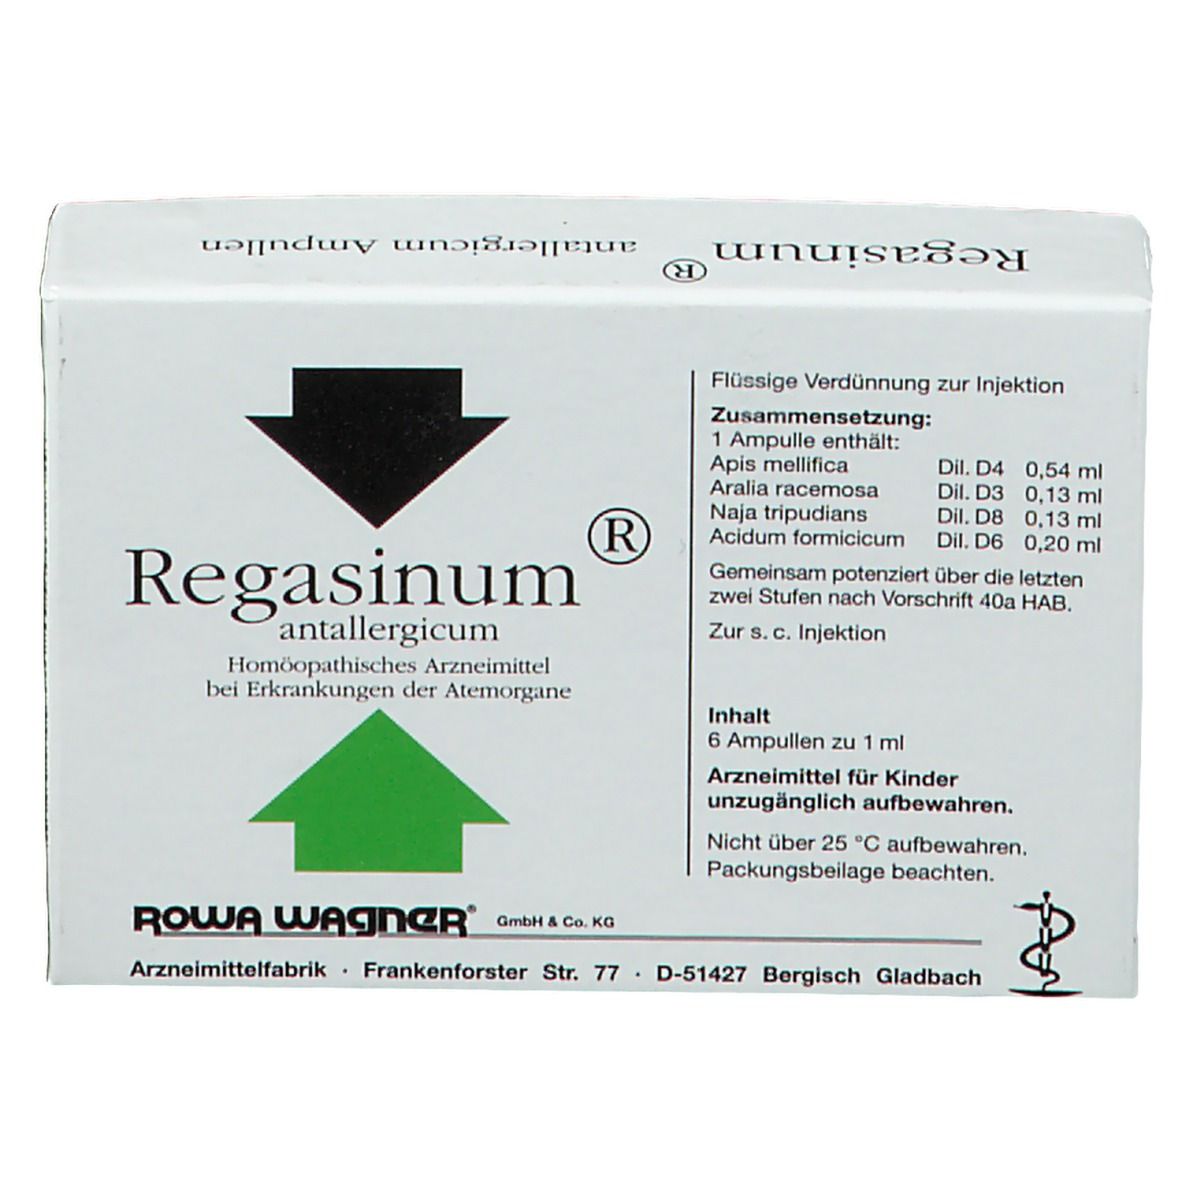 Regasinum® Antallergicum